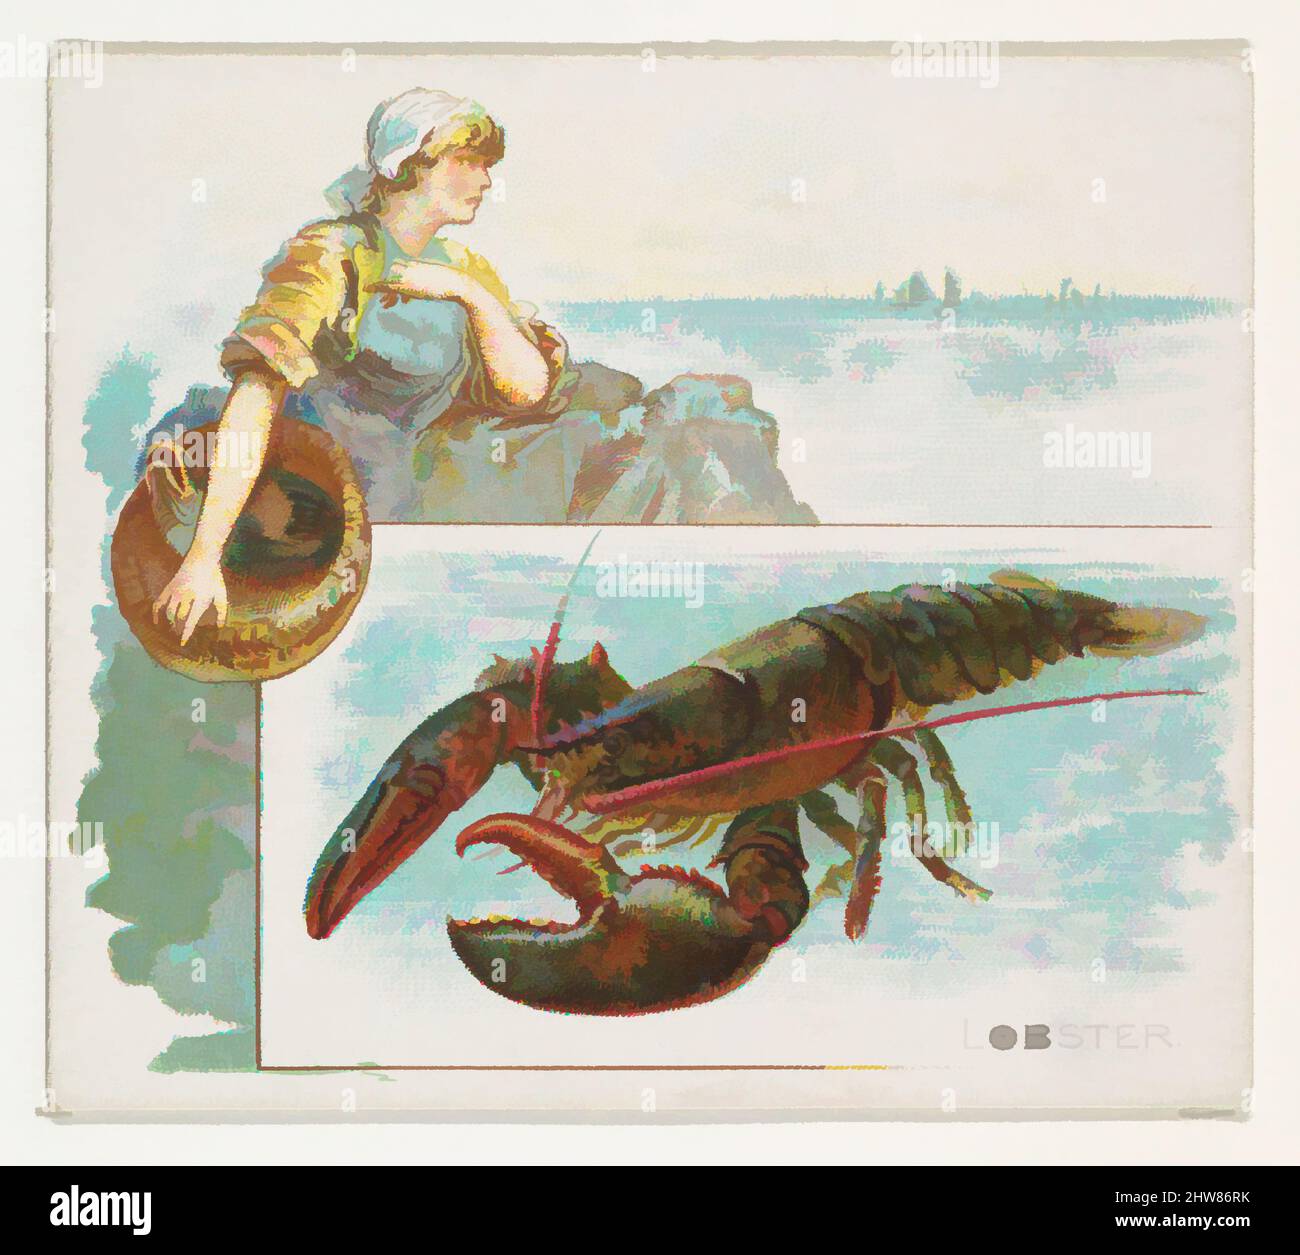 Art Inspired by Lobster, from Fish from American Waters series (N39) for Allen & Ginter Cigarettes, 1889, Commercial color litograph, Sheet: 2 7/8 x 3 1/4 in. (7,3 x 8,3 cm), carte commerciali della serie 'Fish from American Waters' (N39), emesse nel 1889 in un set di 50 carte da promuovere, opere classiche modernizzate da Artotop con un tuffo di modernità. Forme, colore e valore, impatto visivo accattivante sulle emozioni artistiche attraverso la libertà delle opere d'arte in modo contemporaneo. Un messaggio senza tempo che persegue una nuova direzione selvaggiamente creativa. Artisti che si rivolgono al supporto digitale e creano l'NFT Artotop Foto Stock